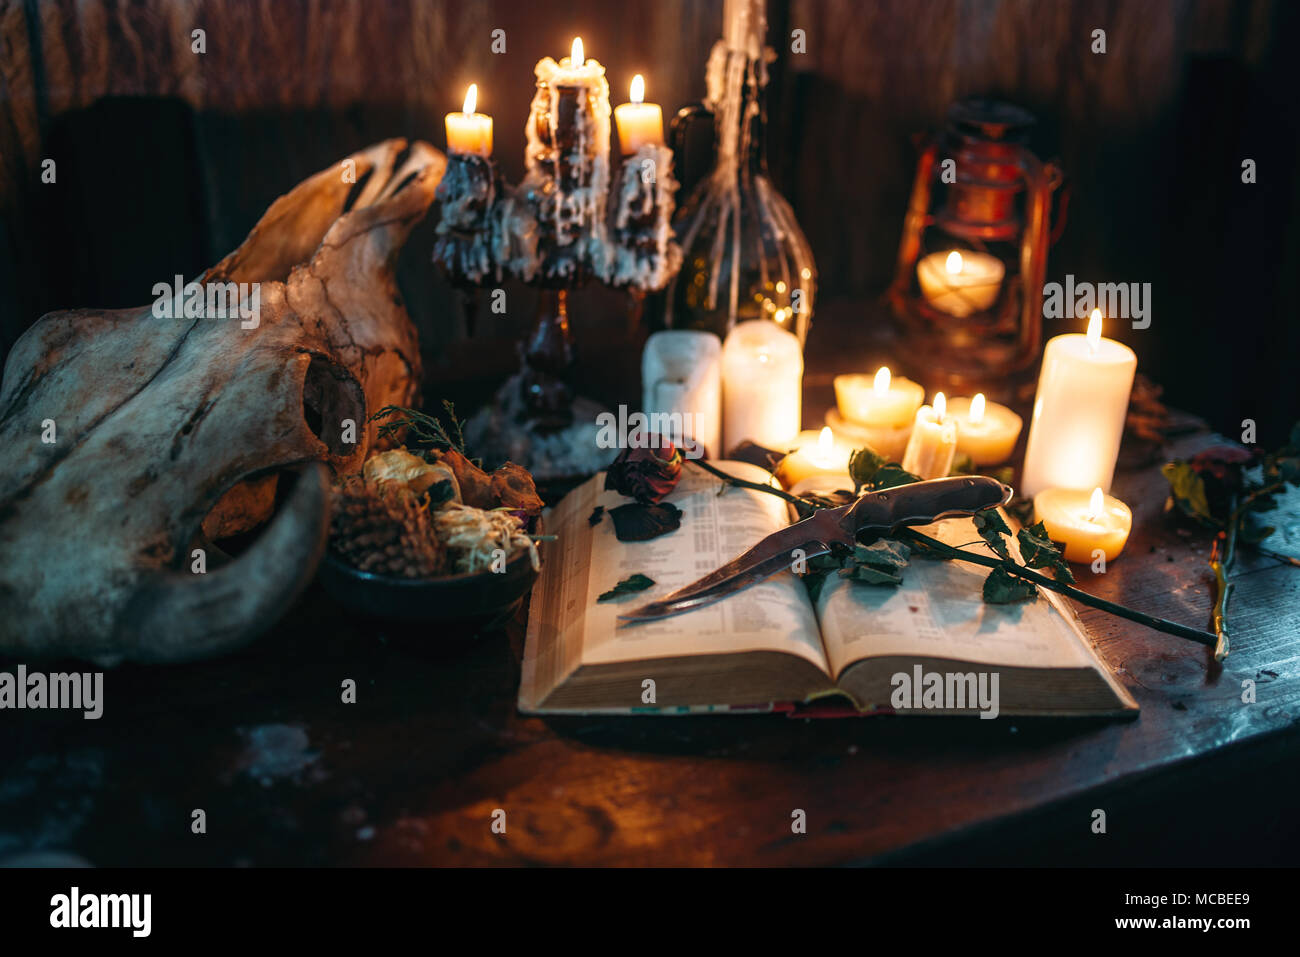 La sorcellerie, magie noire, rituel des bougies avec réserve Photo Stock -  Alamy